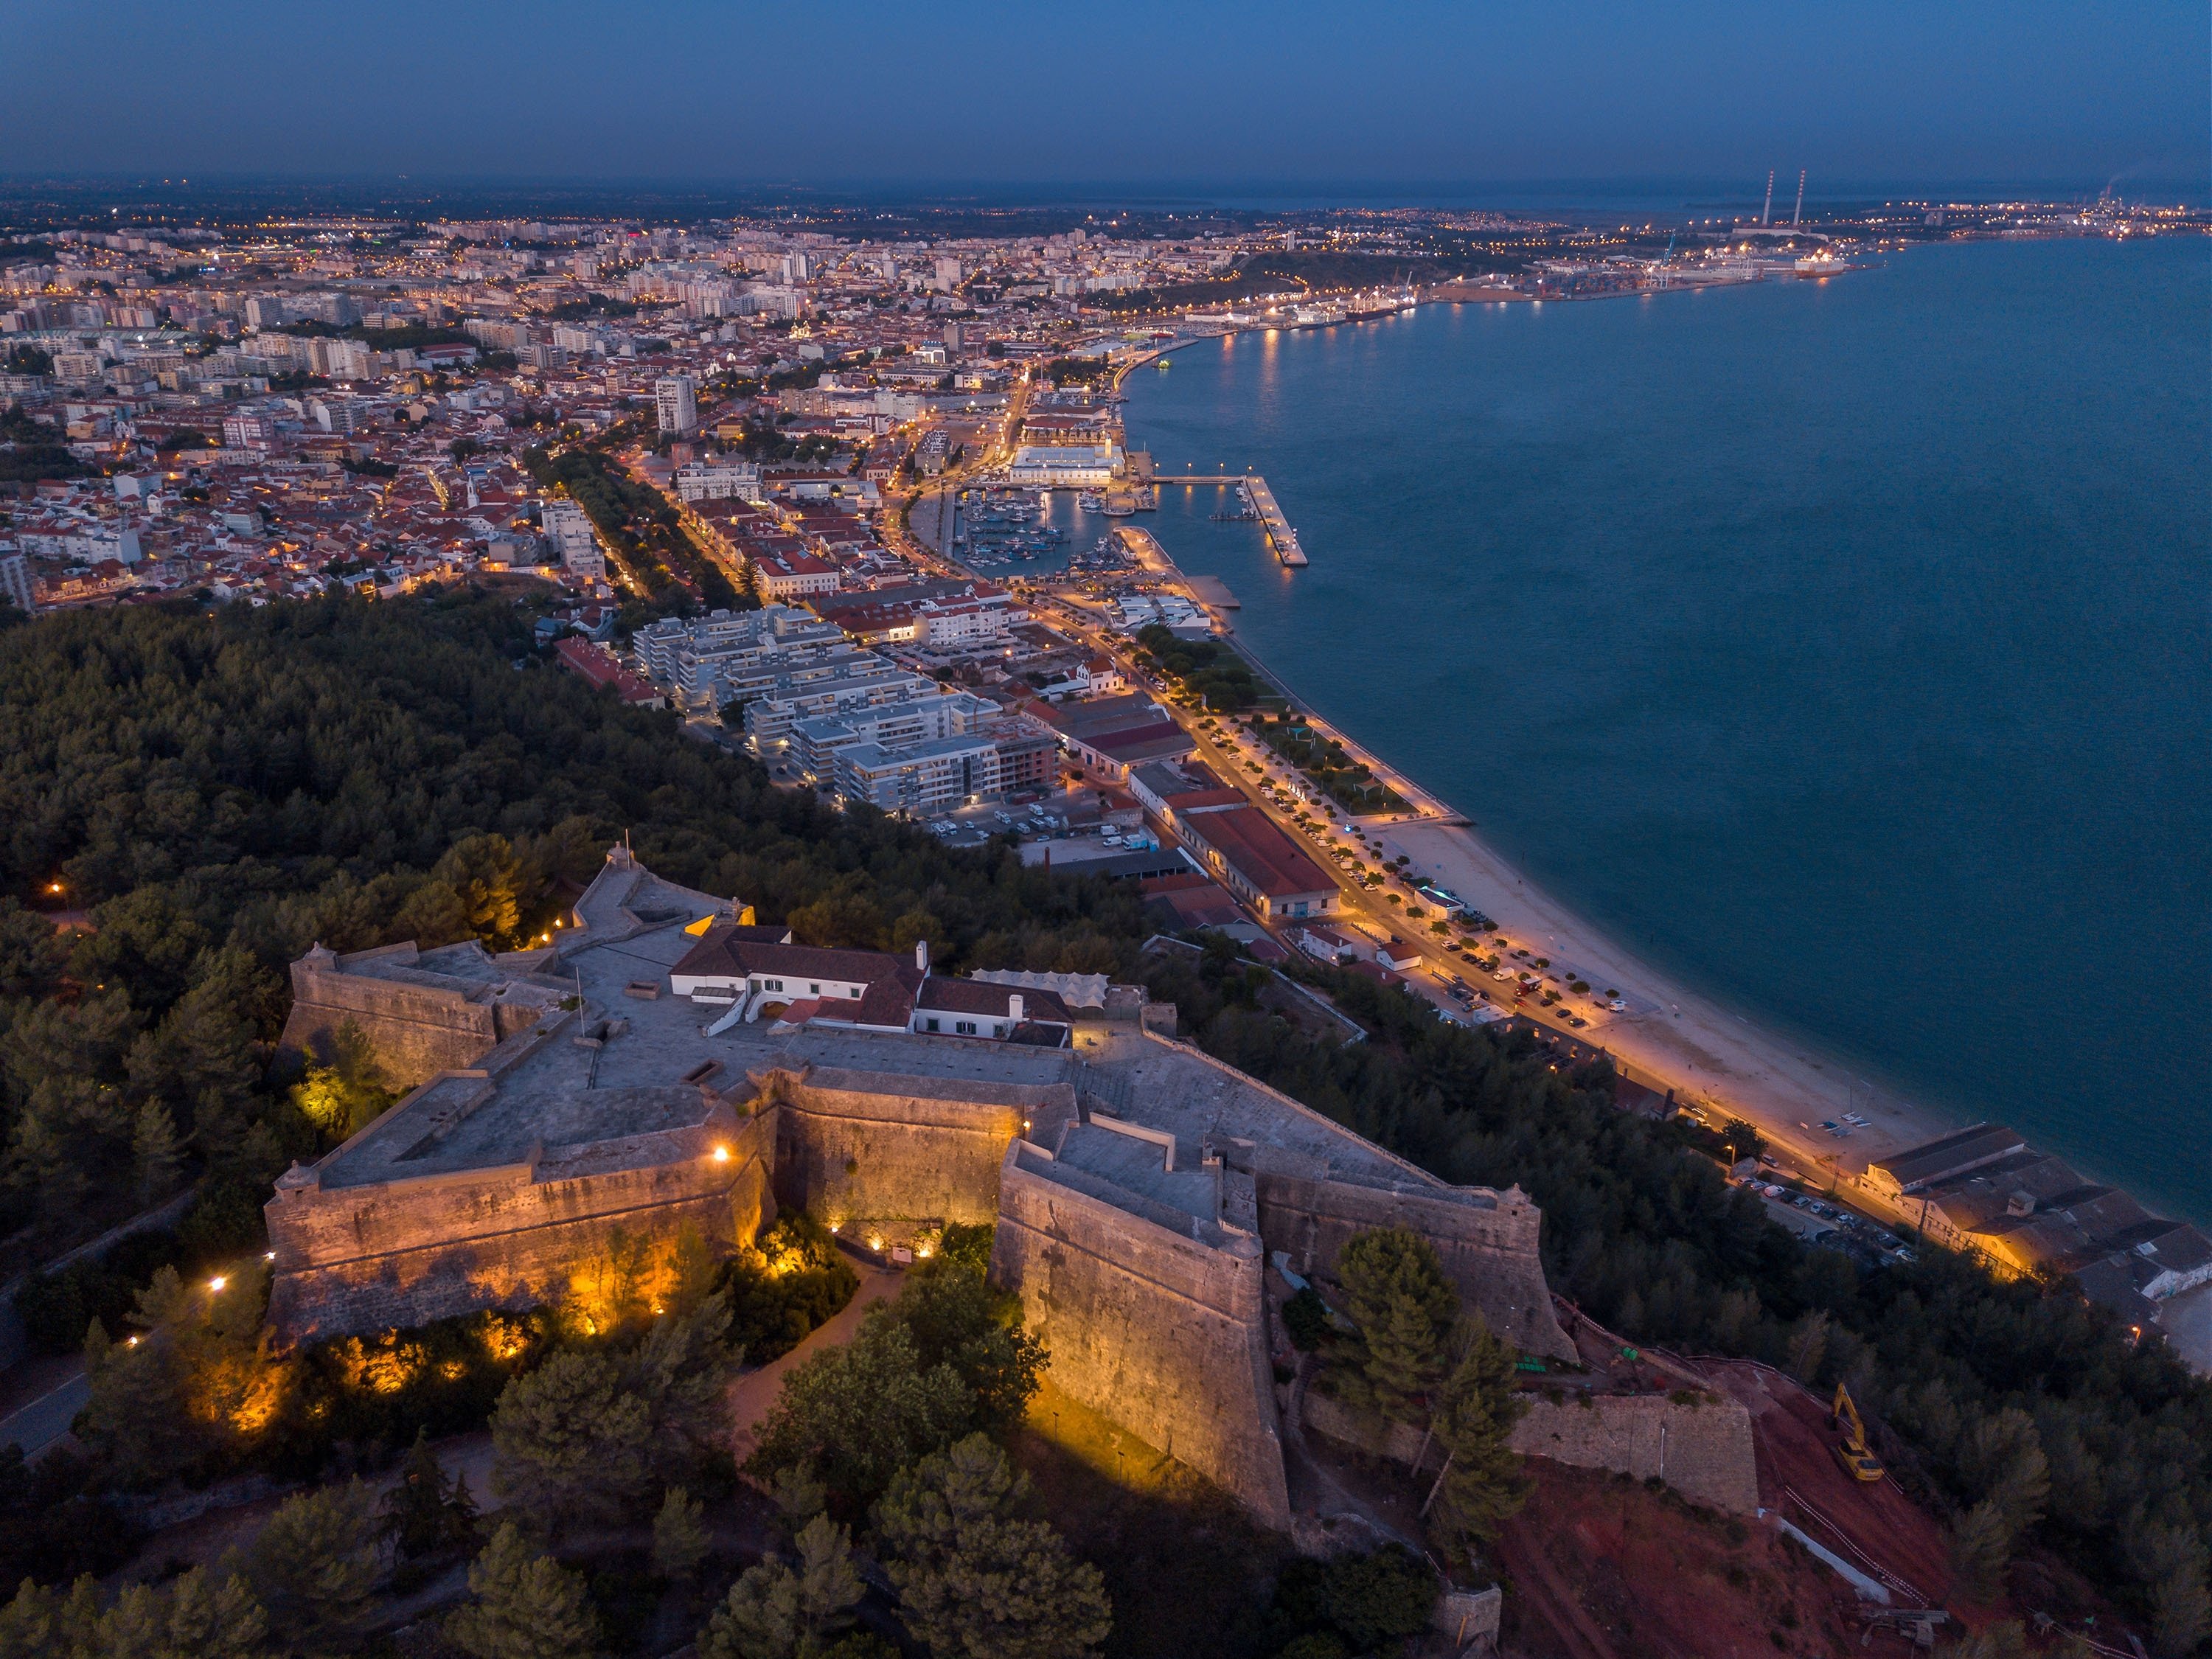 Luzes de visão noturna aérea iluminam a cidade de Sethupal, Portugal.  (Foto do Shutterstock)